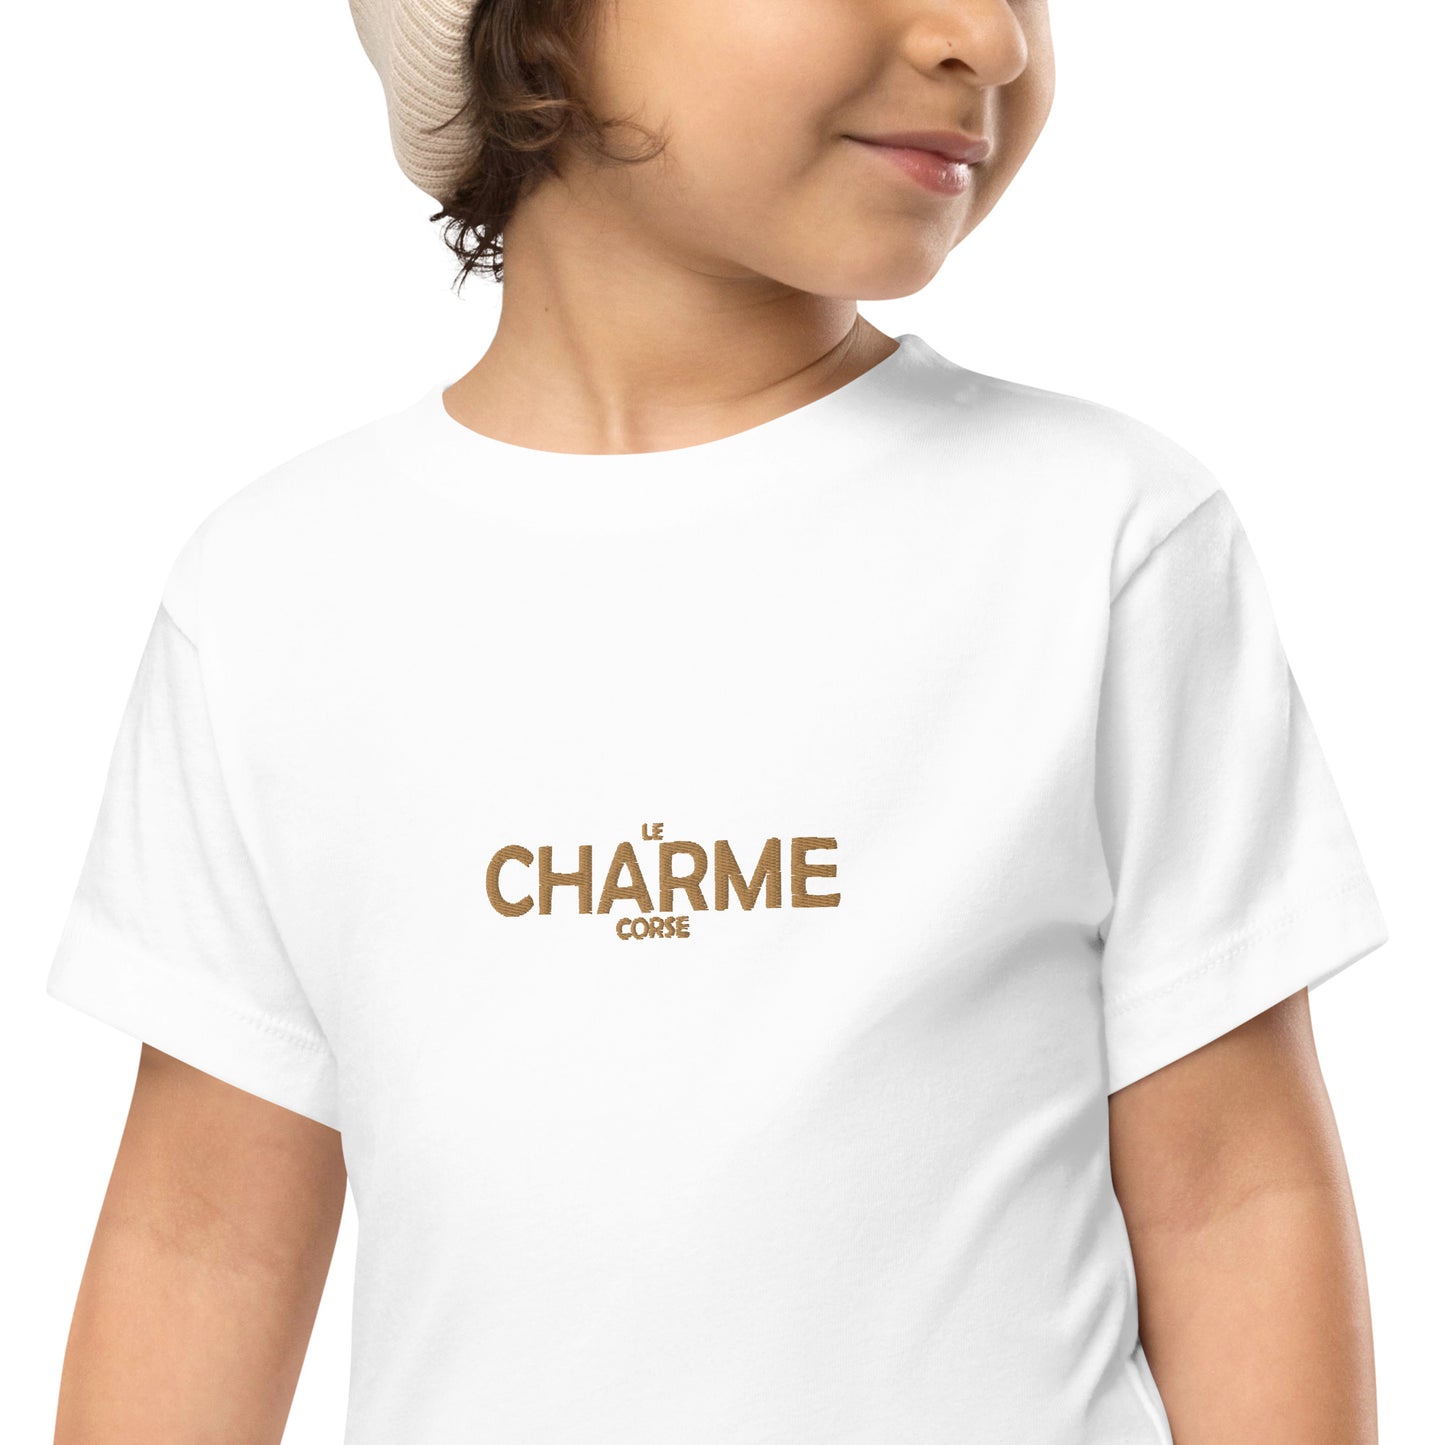 T-shirt à Manches Courtes Brodé Le Charme Corse